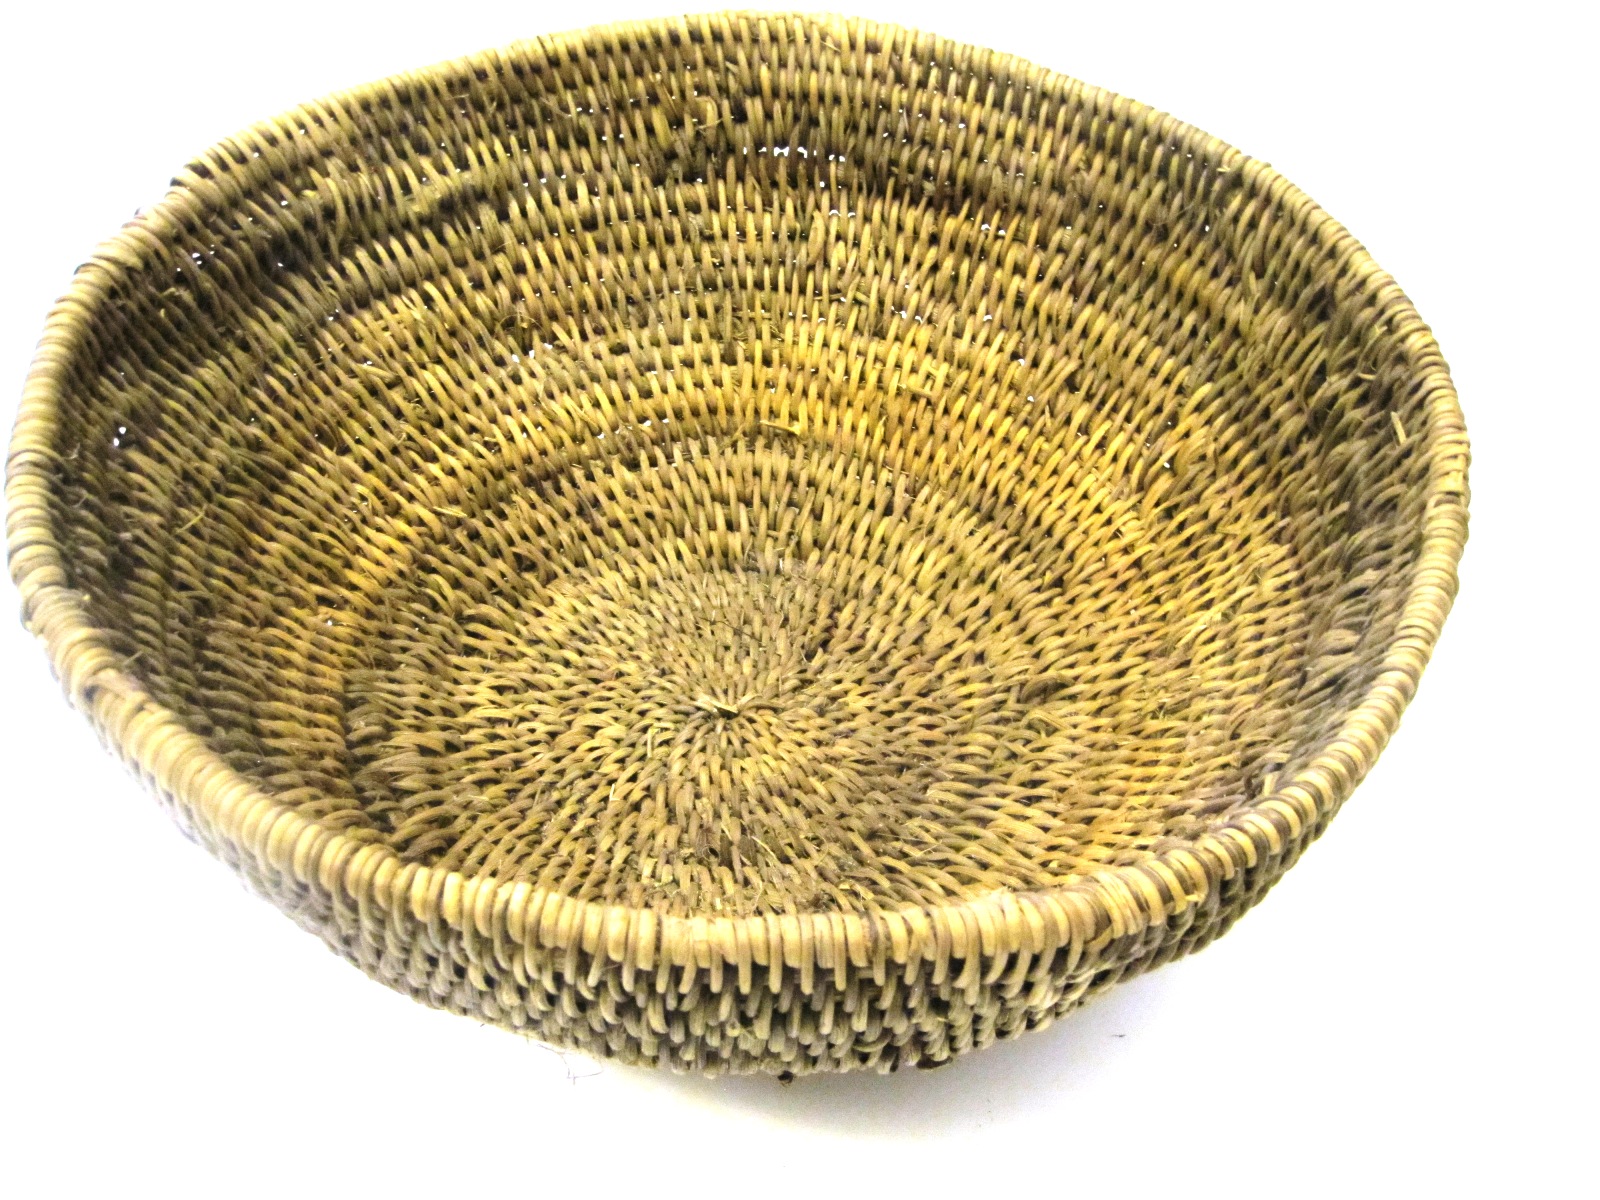 Buhera Oval Basket from Zimbabwe #002